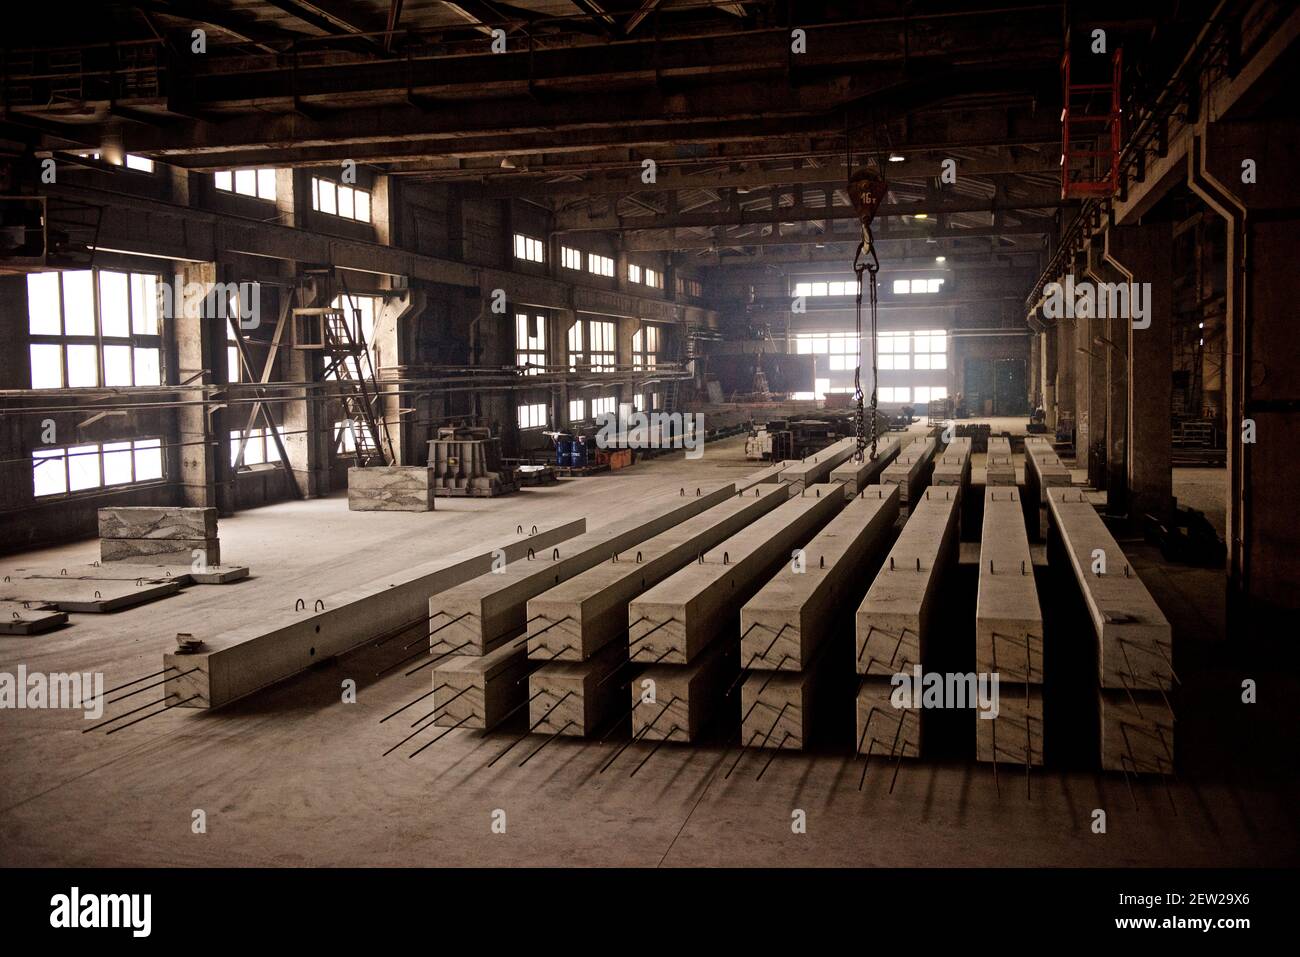 usine de produits en béton armé, procédés de travail, ébauches pour les produits futurs Banque D'Images